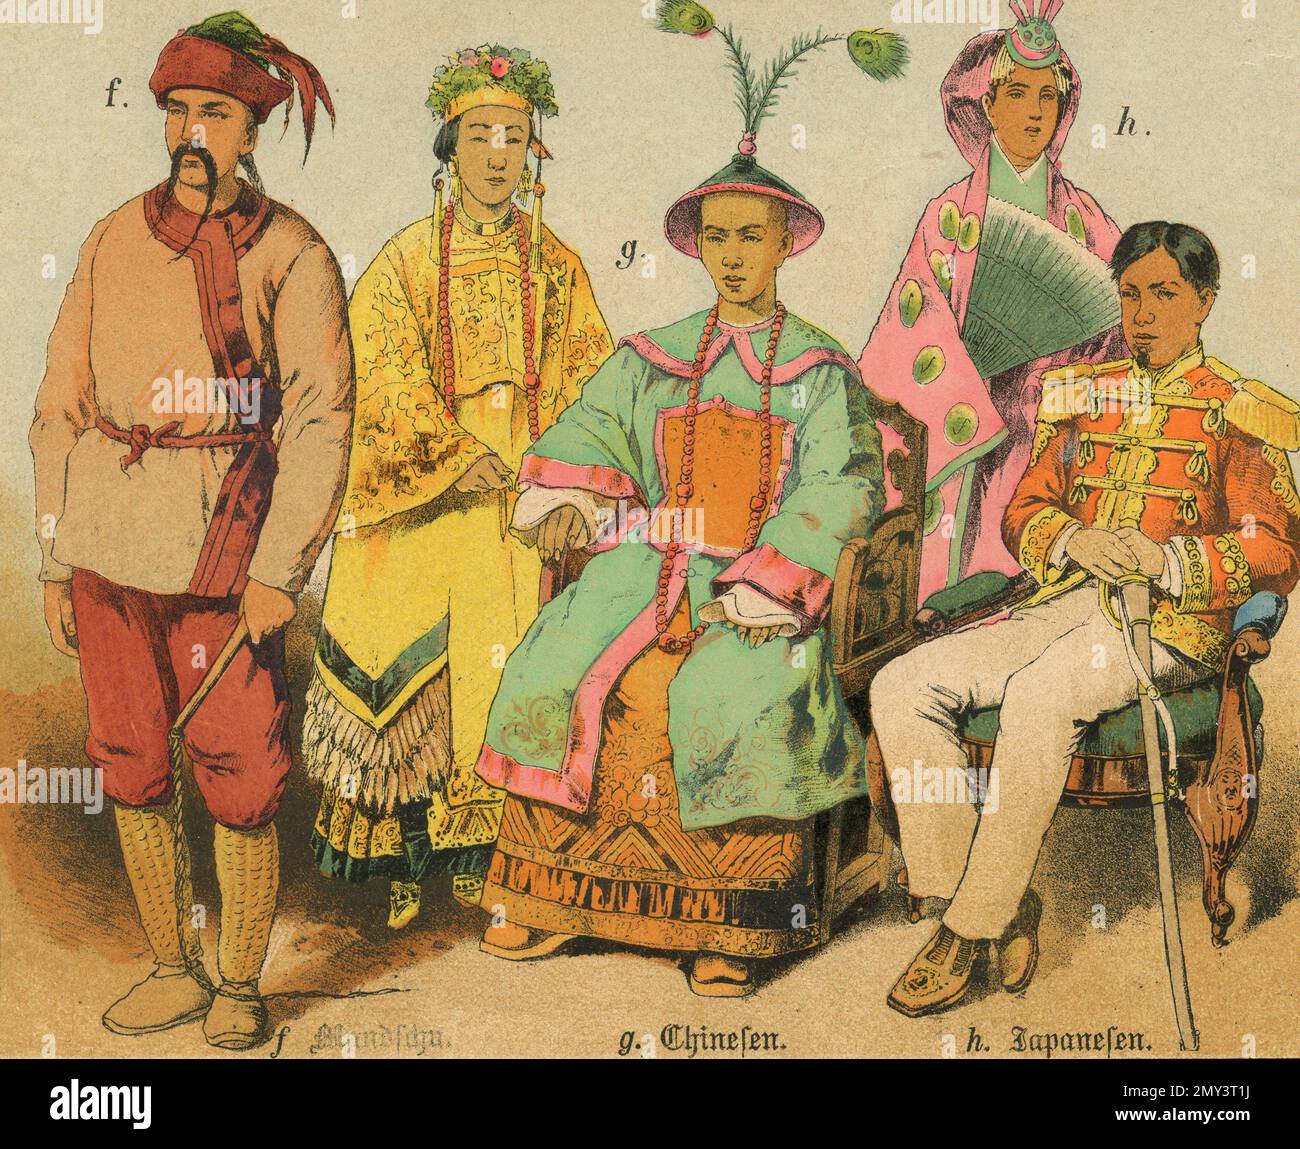 Popolazioni del mondo: Manchu, cinese, giapponese, illustrazione a colori, Germania 1800s Foto Stock